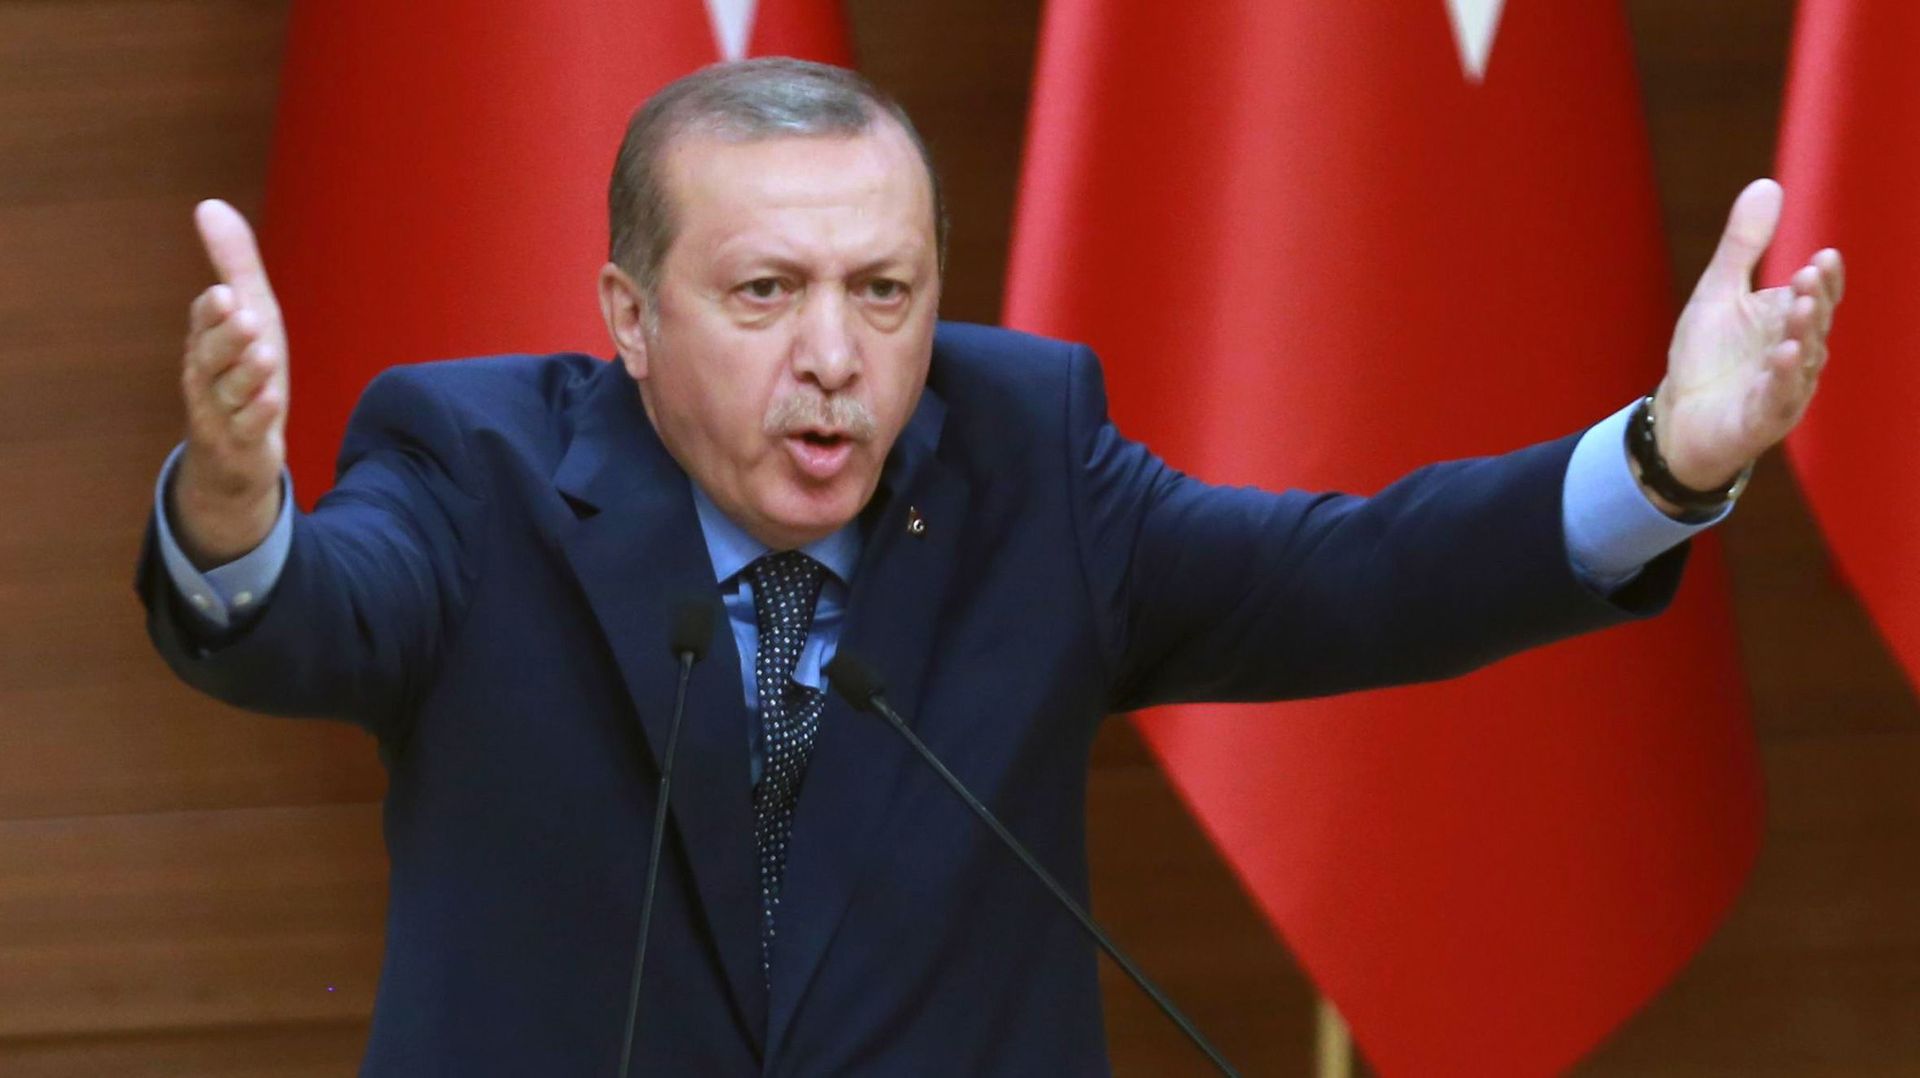 u lendemain de la tentative de coup d'état, Erdogan a lancé une vaste purge pour éliminer l'influence des membres de la confrérie de Gülen.